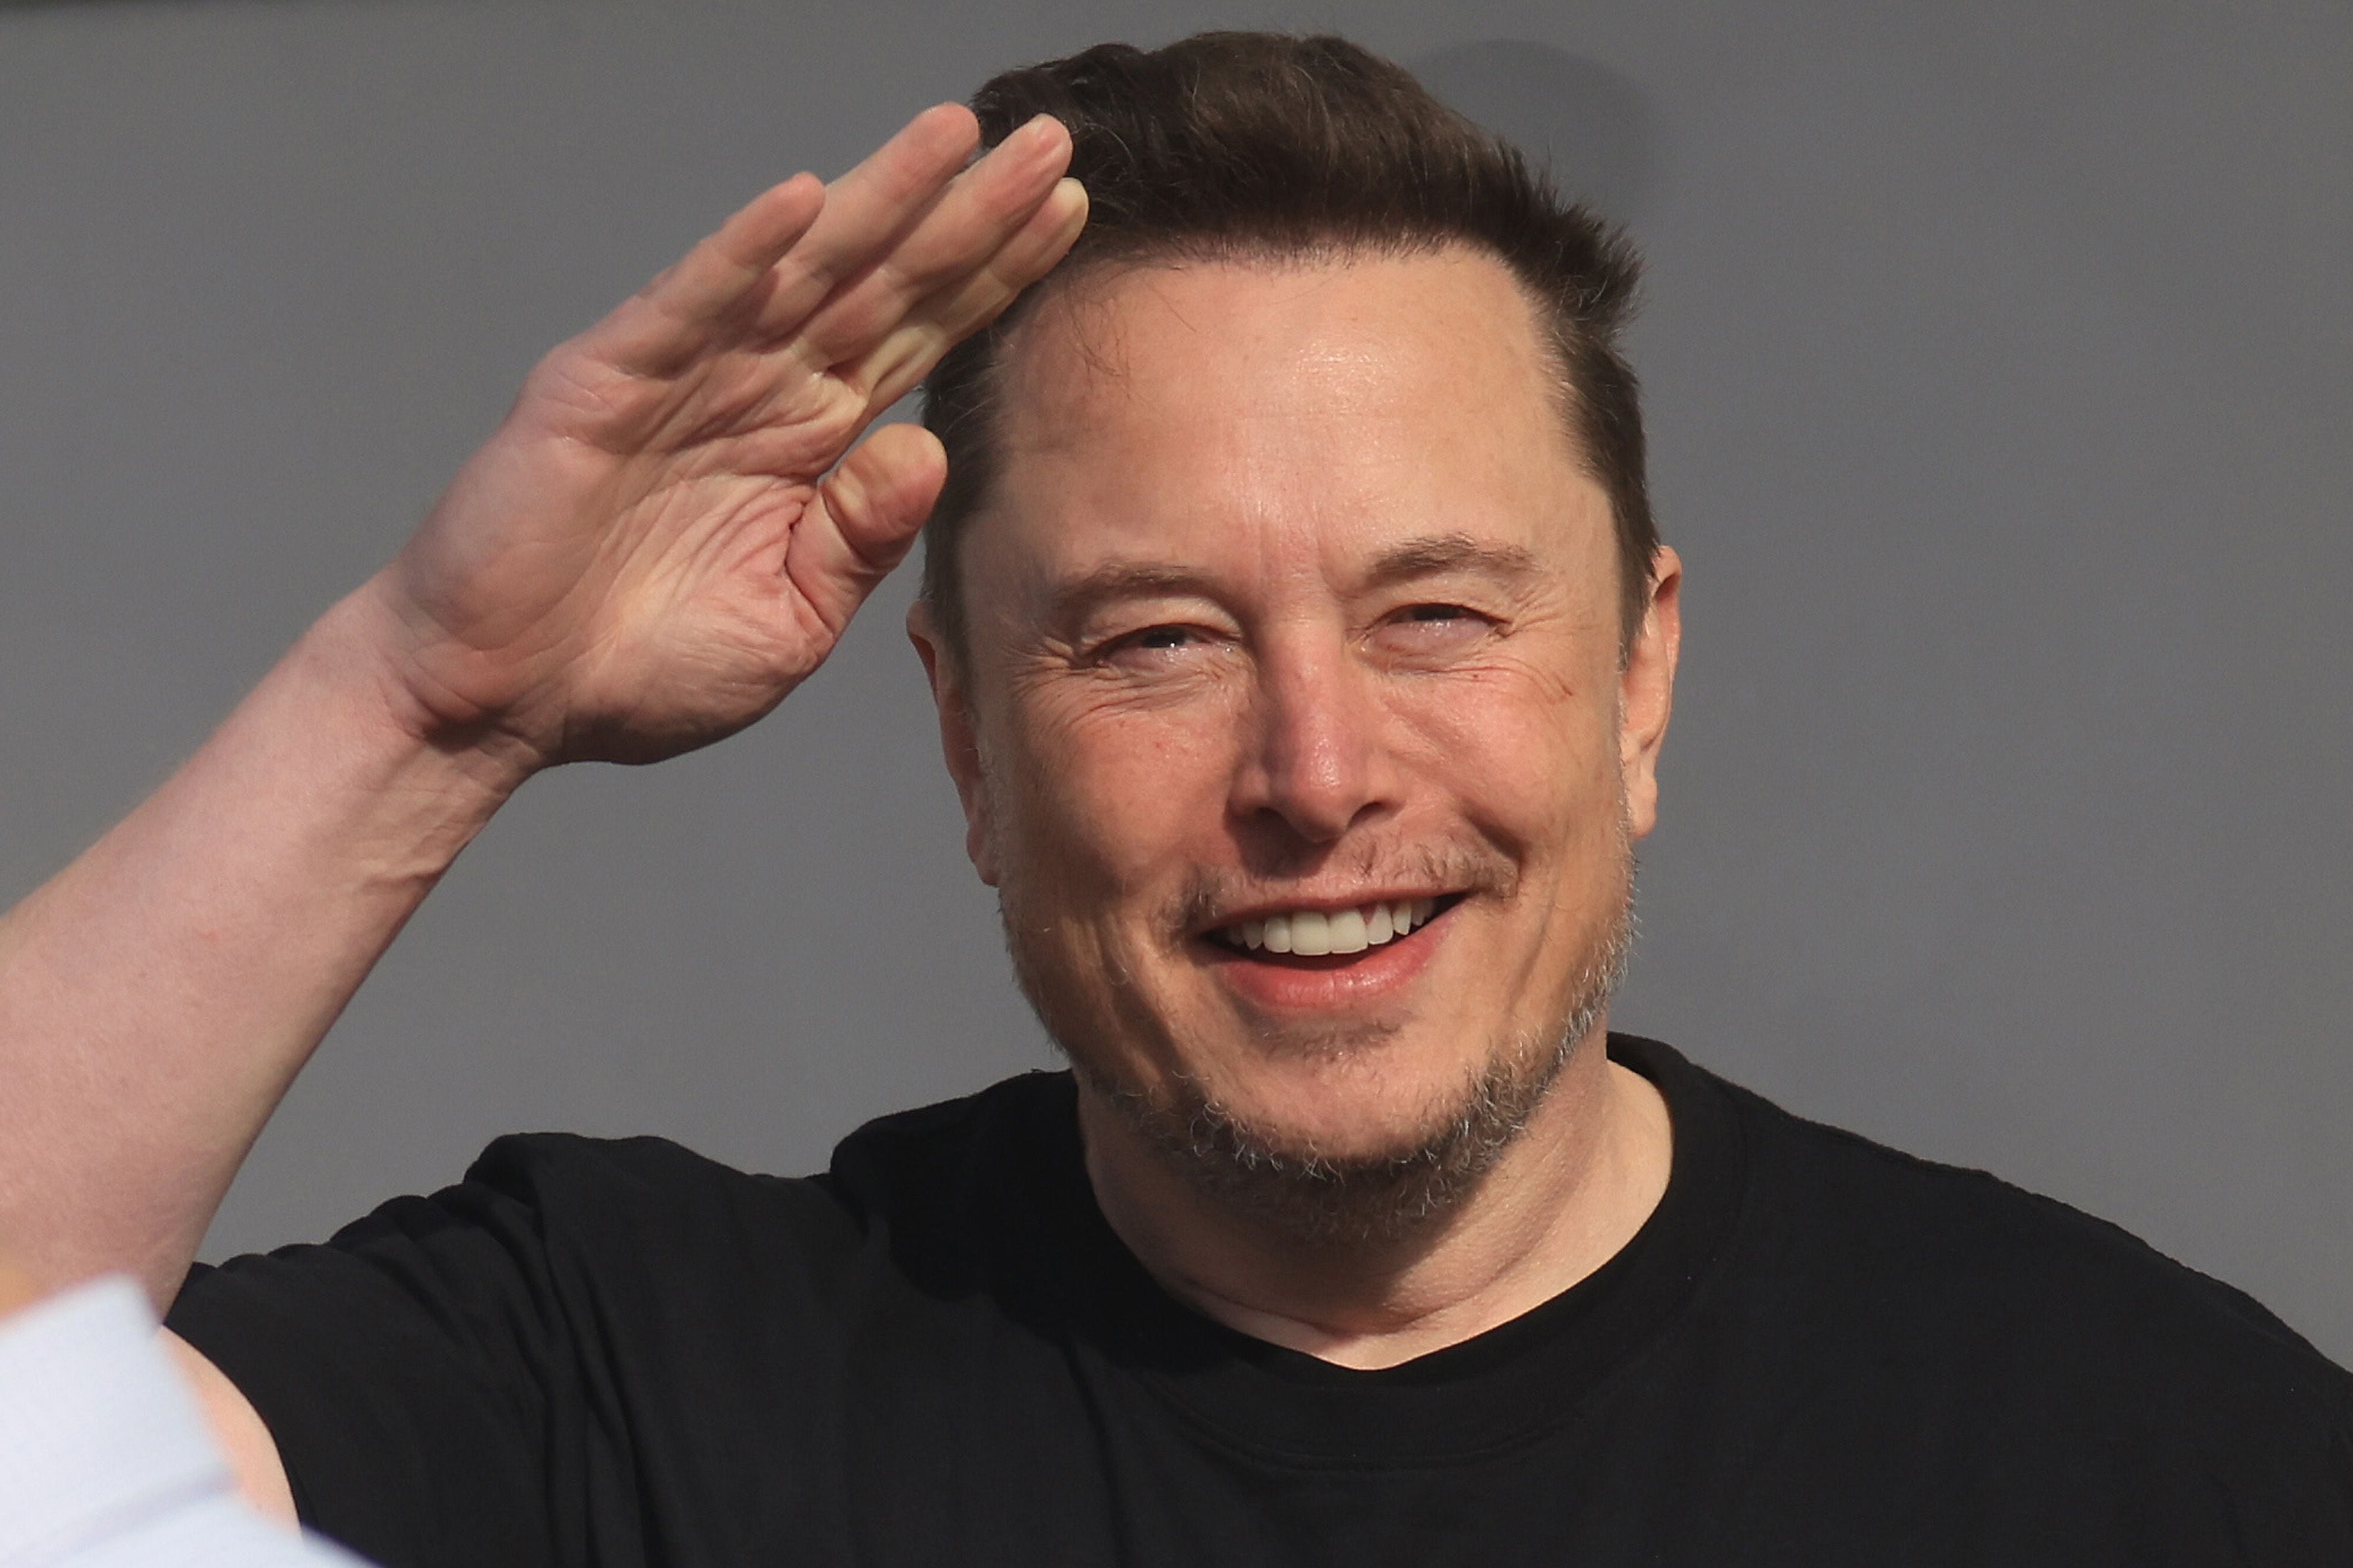 Elon Musk es reconocido por su papel fundamental en empresas de gran envergadura como Tesla y SpaceX. (Krisztian Bocsi/Bloomberg)